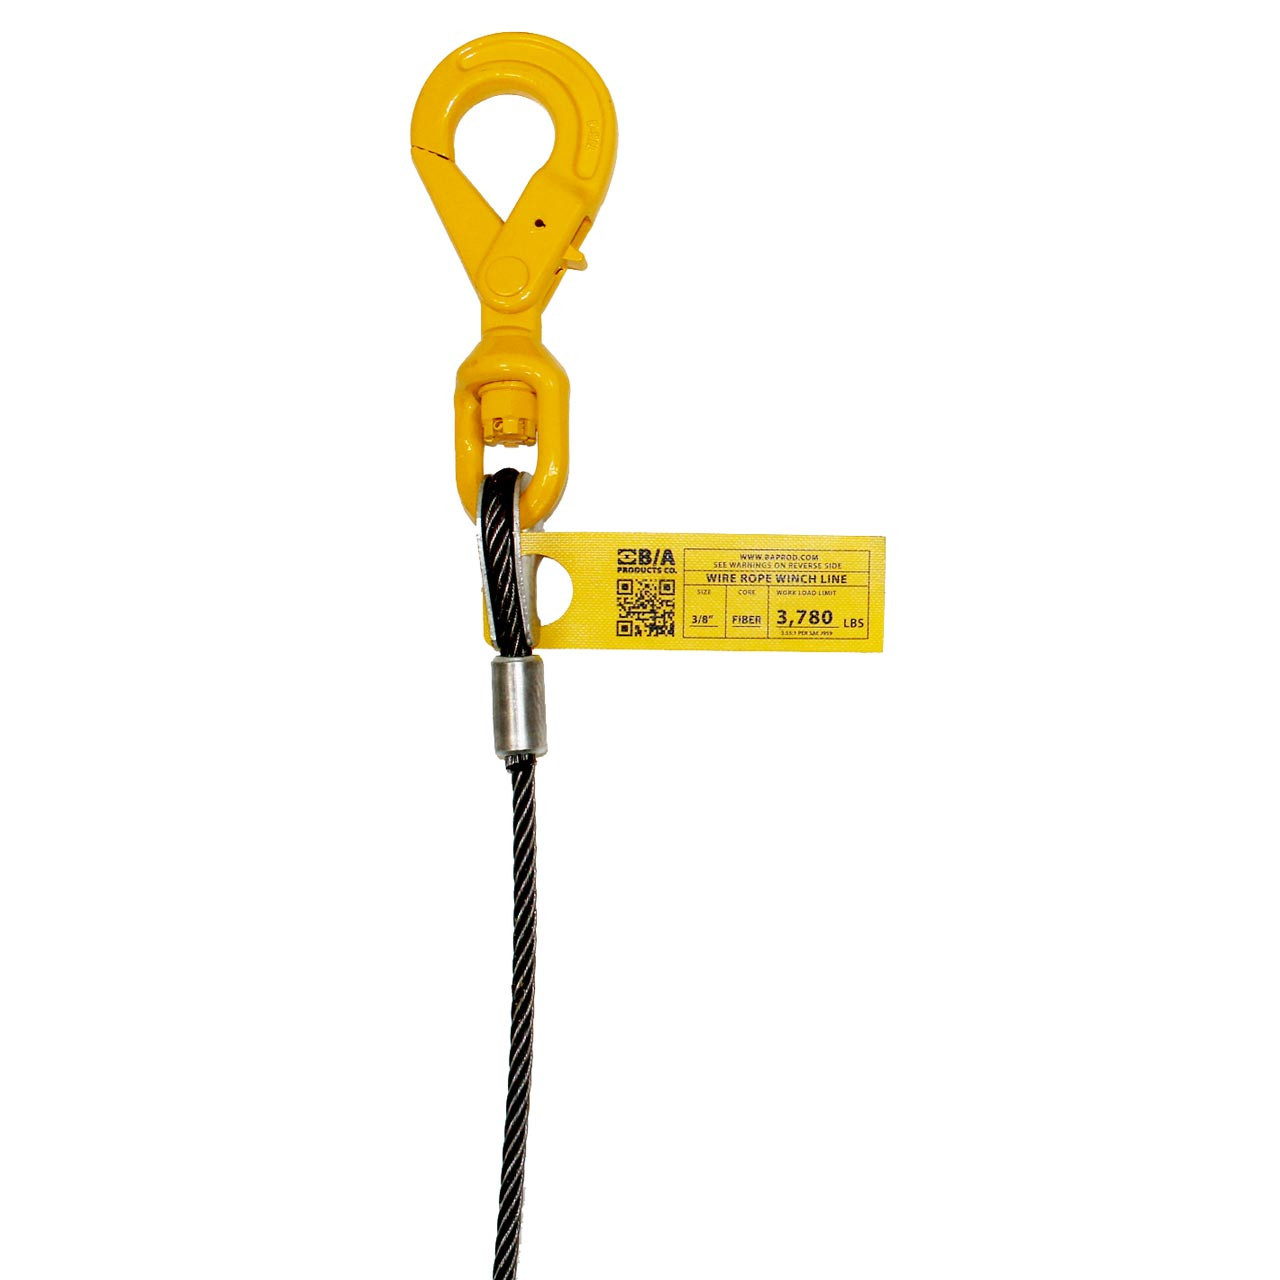 SCIEO 2 Ton Swivel Hook for Lifting-Heavy Duty Crane Hook Swivel